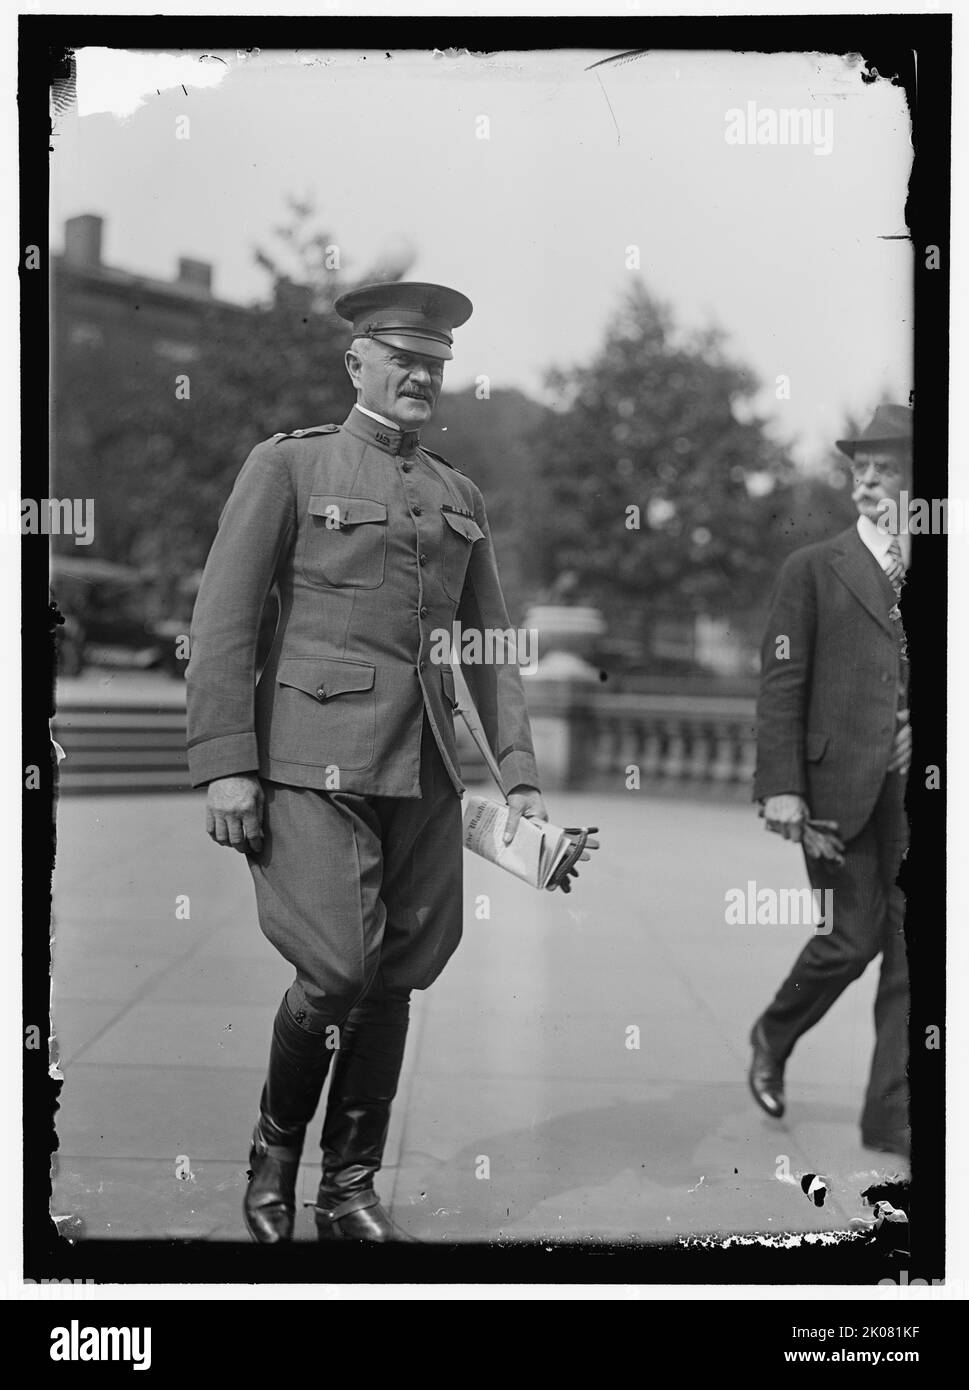 Général John J. Pershing, entre 1916 et 1918. Avec copie du « Washington Post ». Pershing était commandant des forces expéditionnaires américaines sur le front occidental pendant la première Guerre mondiale Banque D'Images